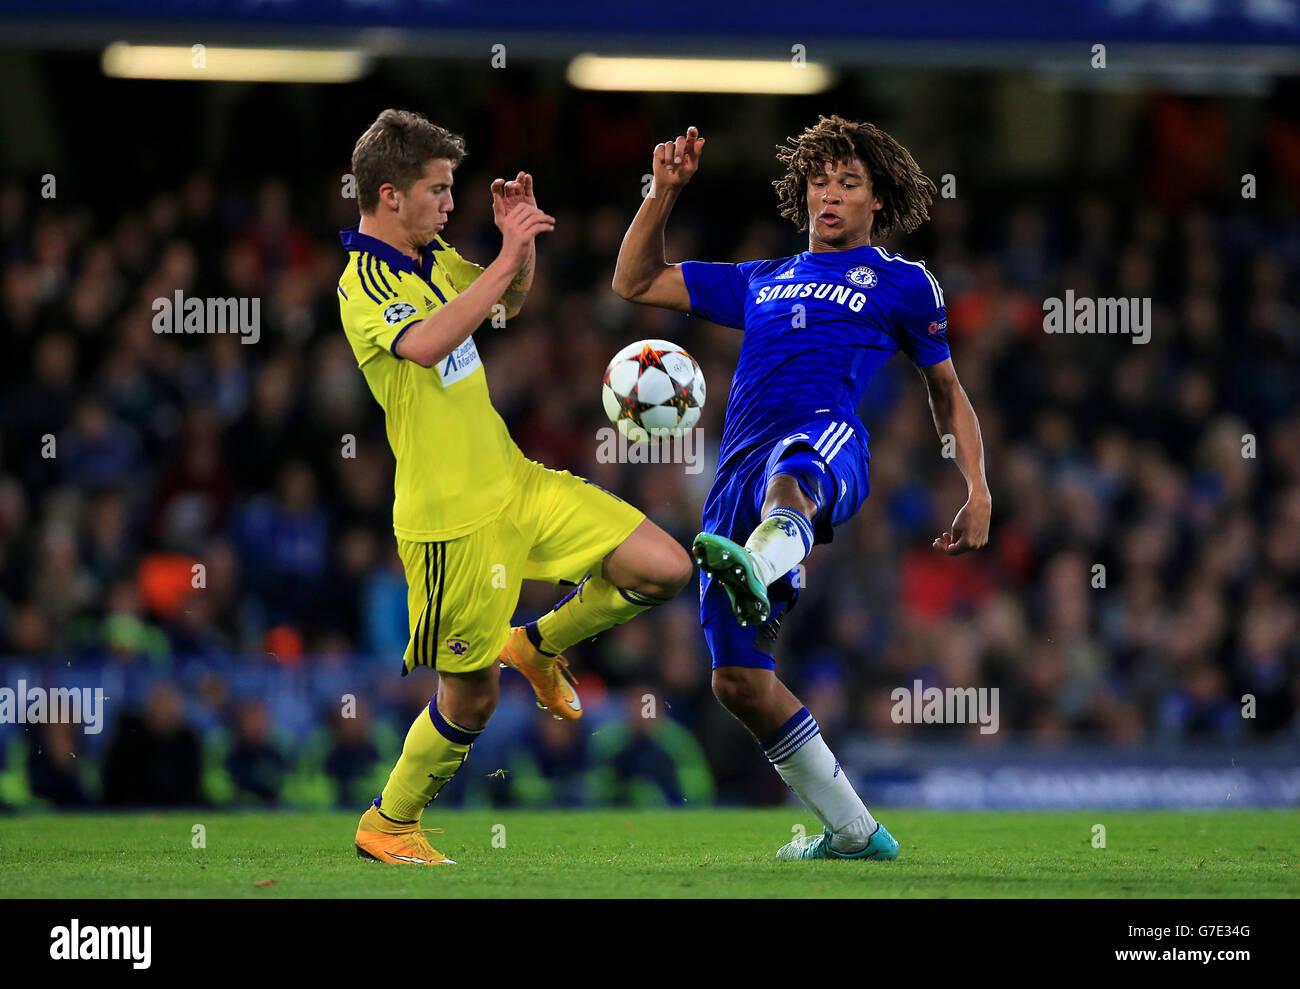 Nathan ake de Chelsea (à droite) en action contre NK Maribor lors du match du groupe G de la Ligue des champions de l'UEFA à Stamford Bridge, Londres. Banque D'Images